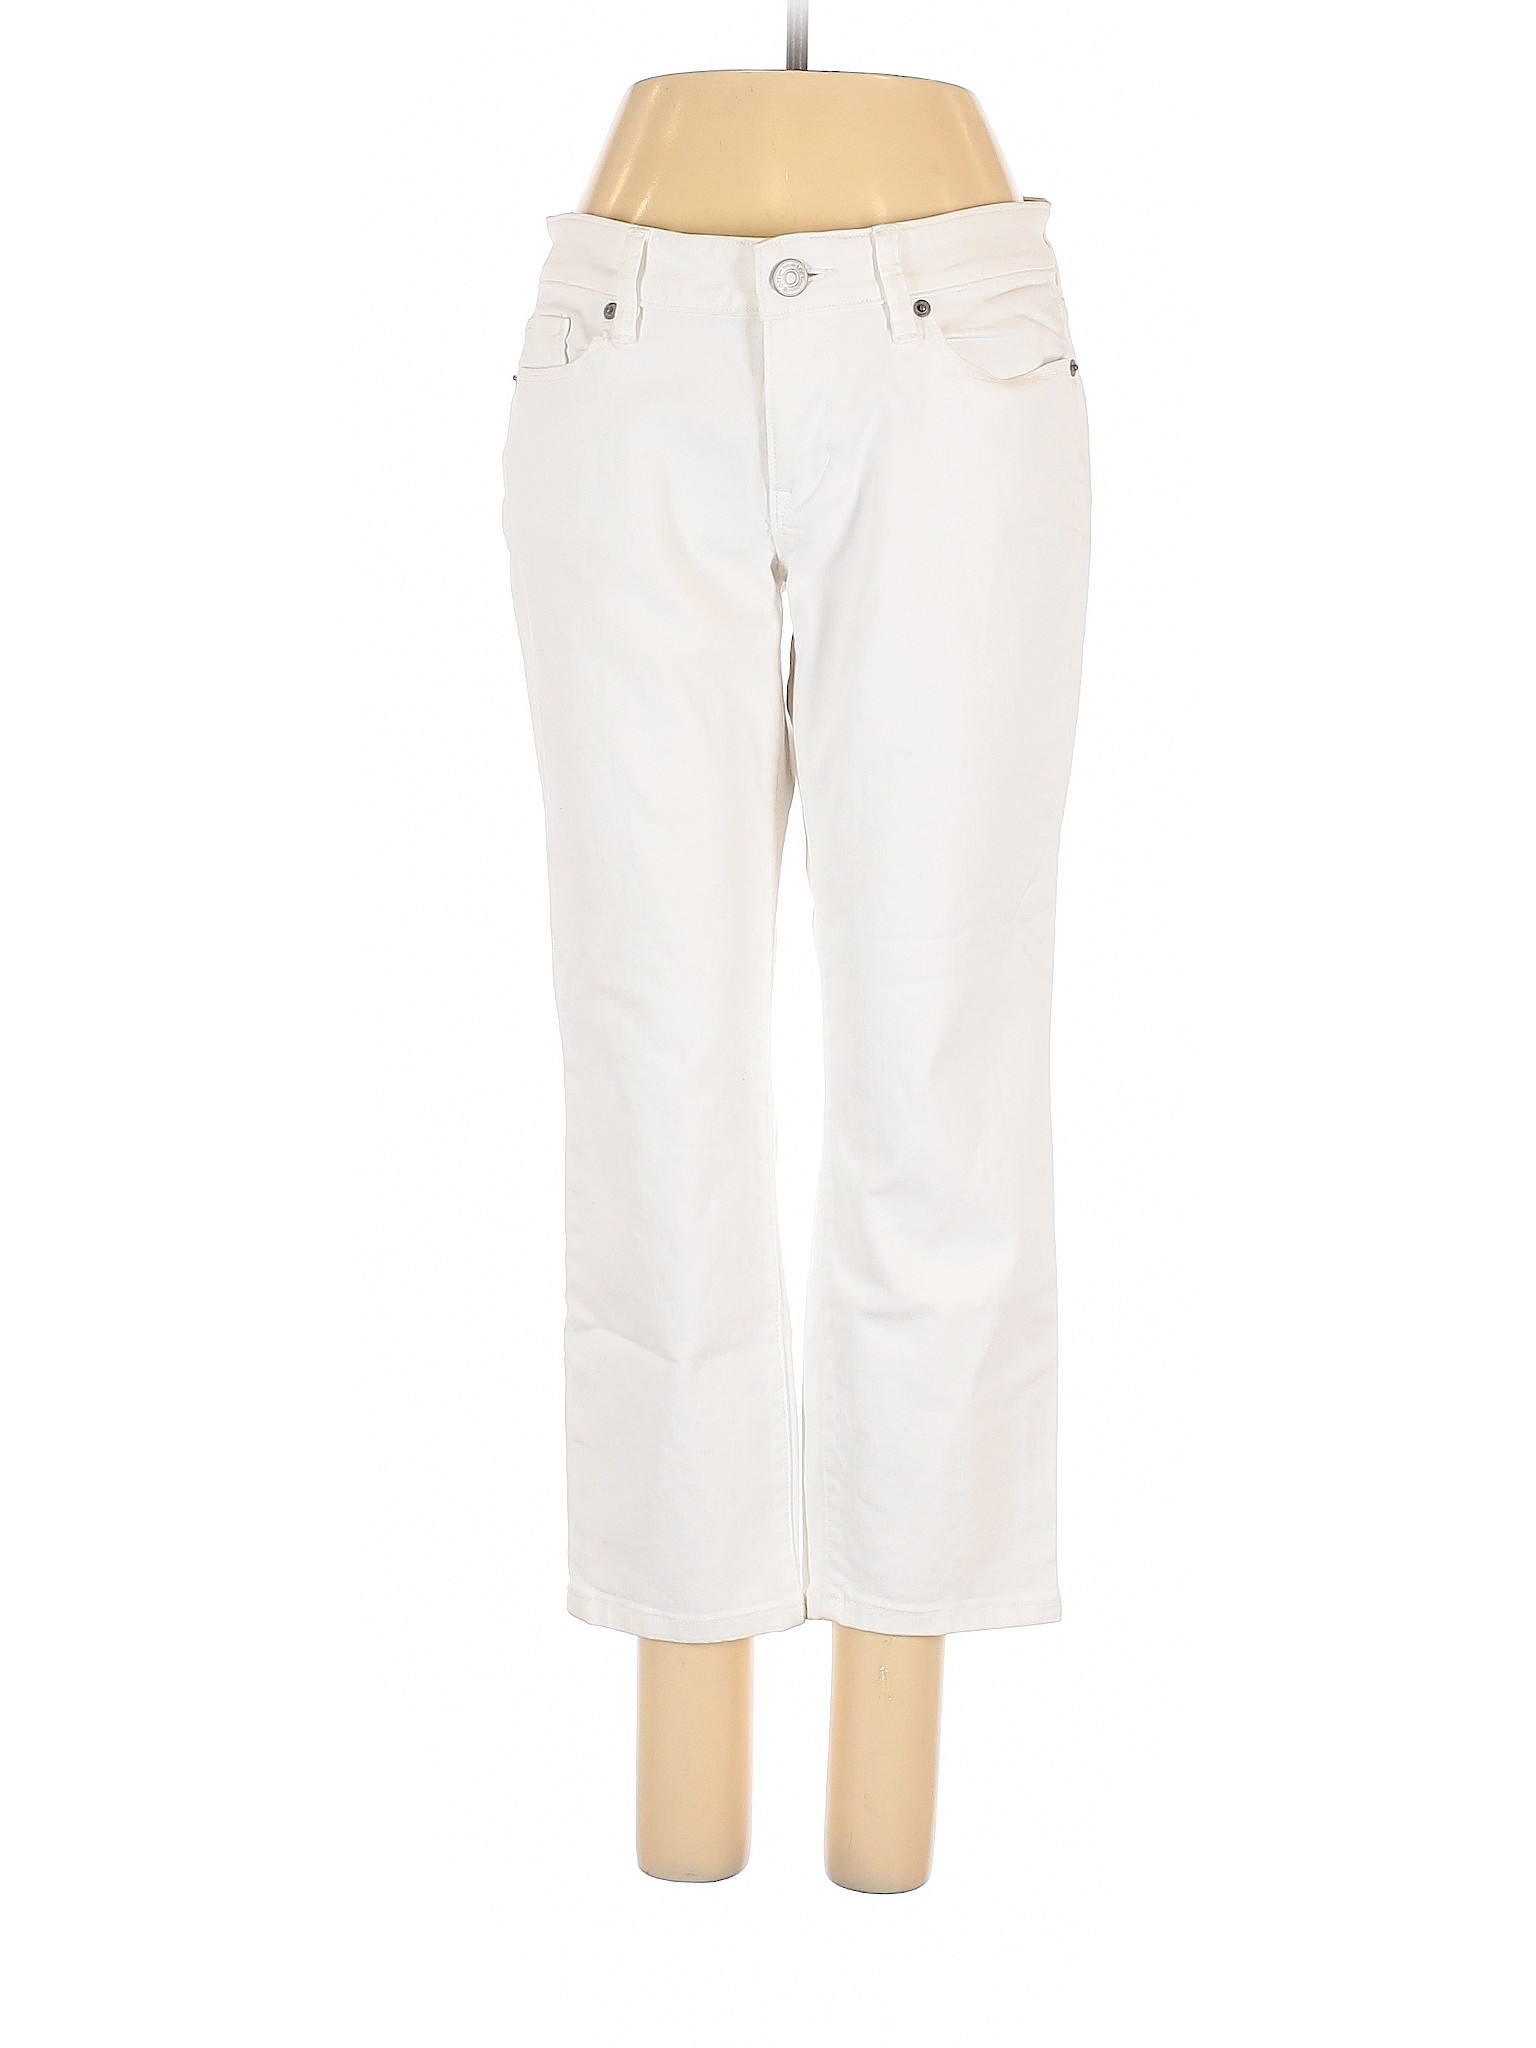 NWT Ann Taylor LOFT Women White Jeans 28W | eBay